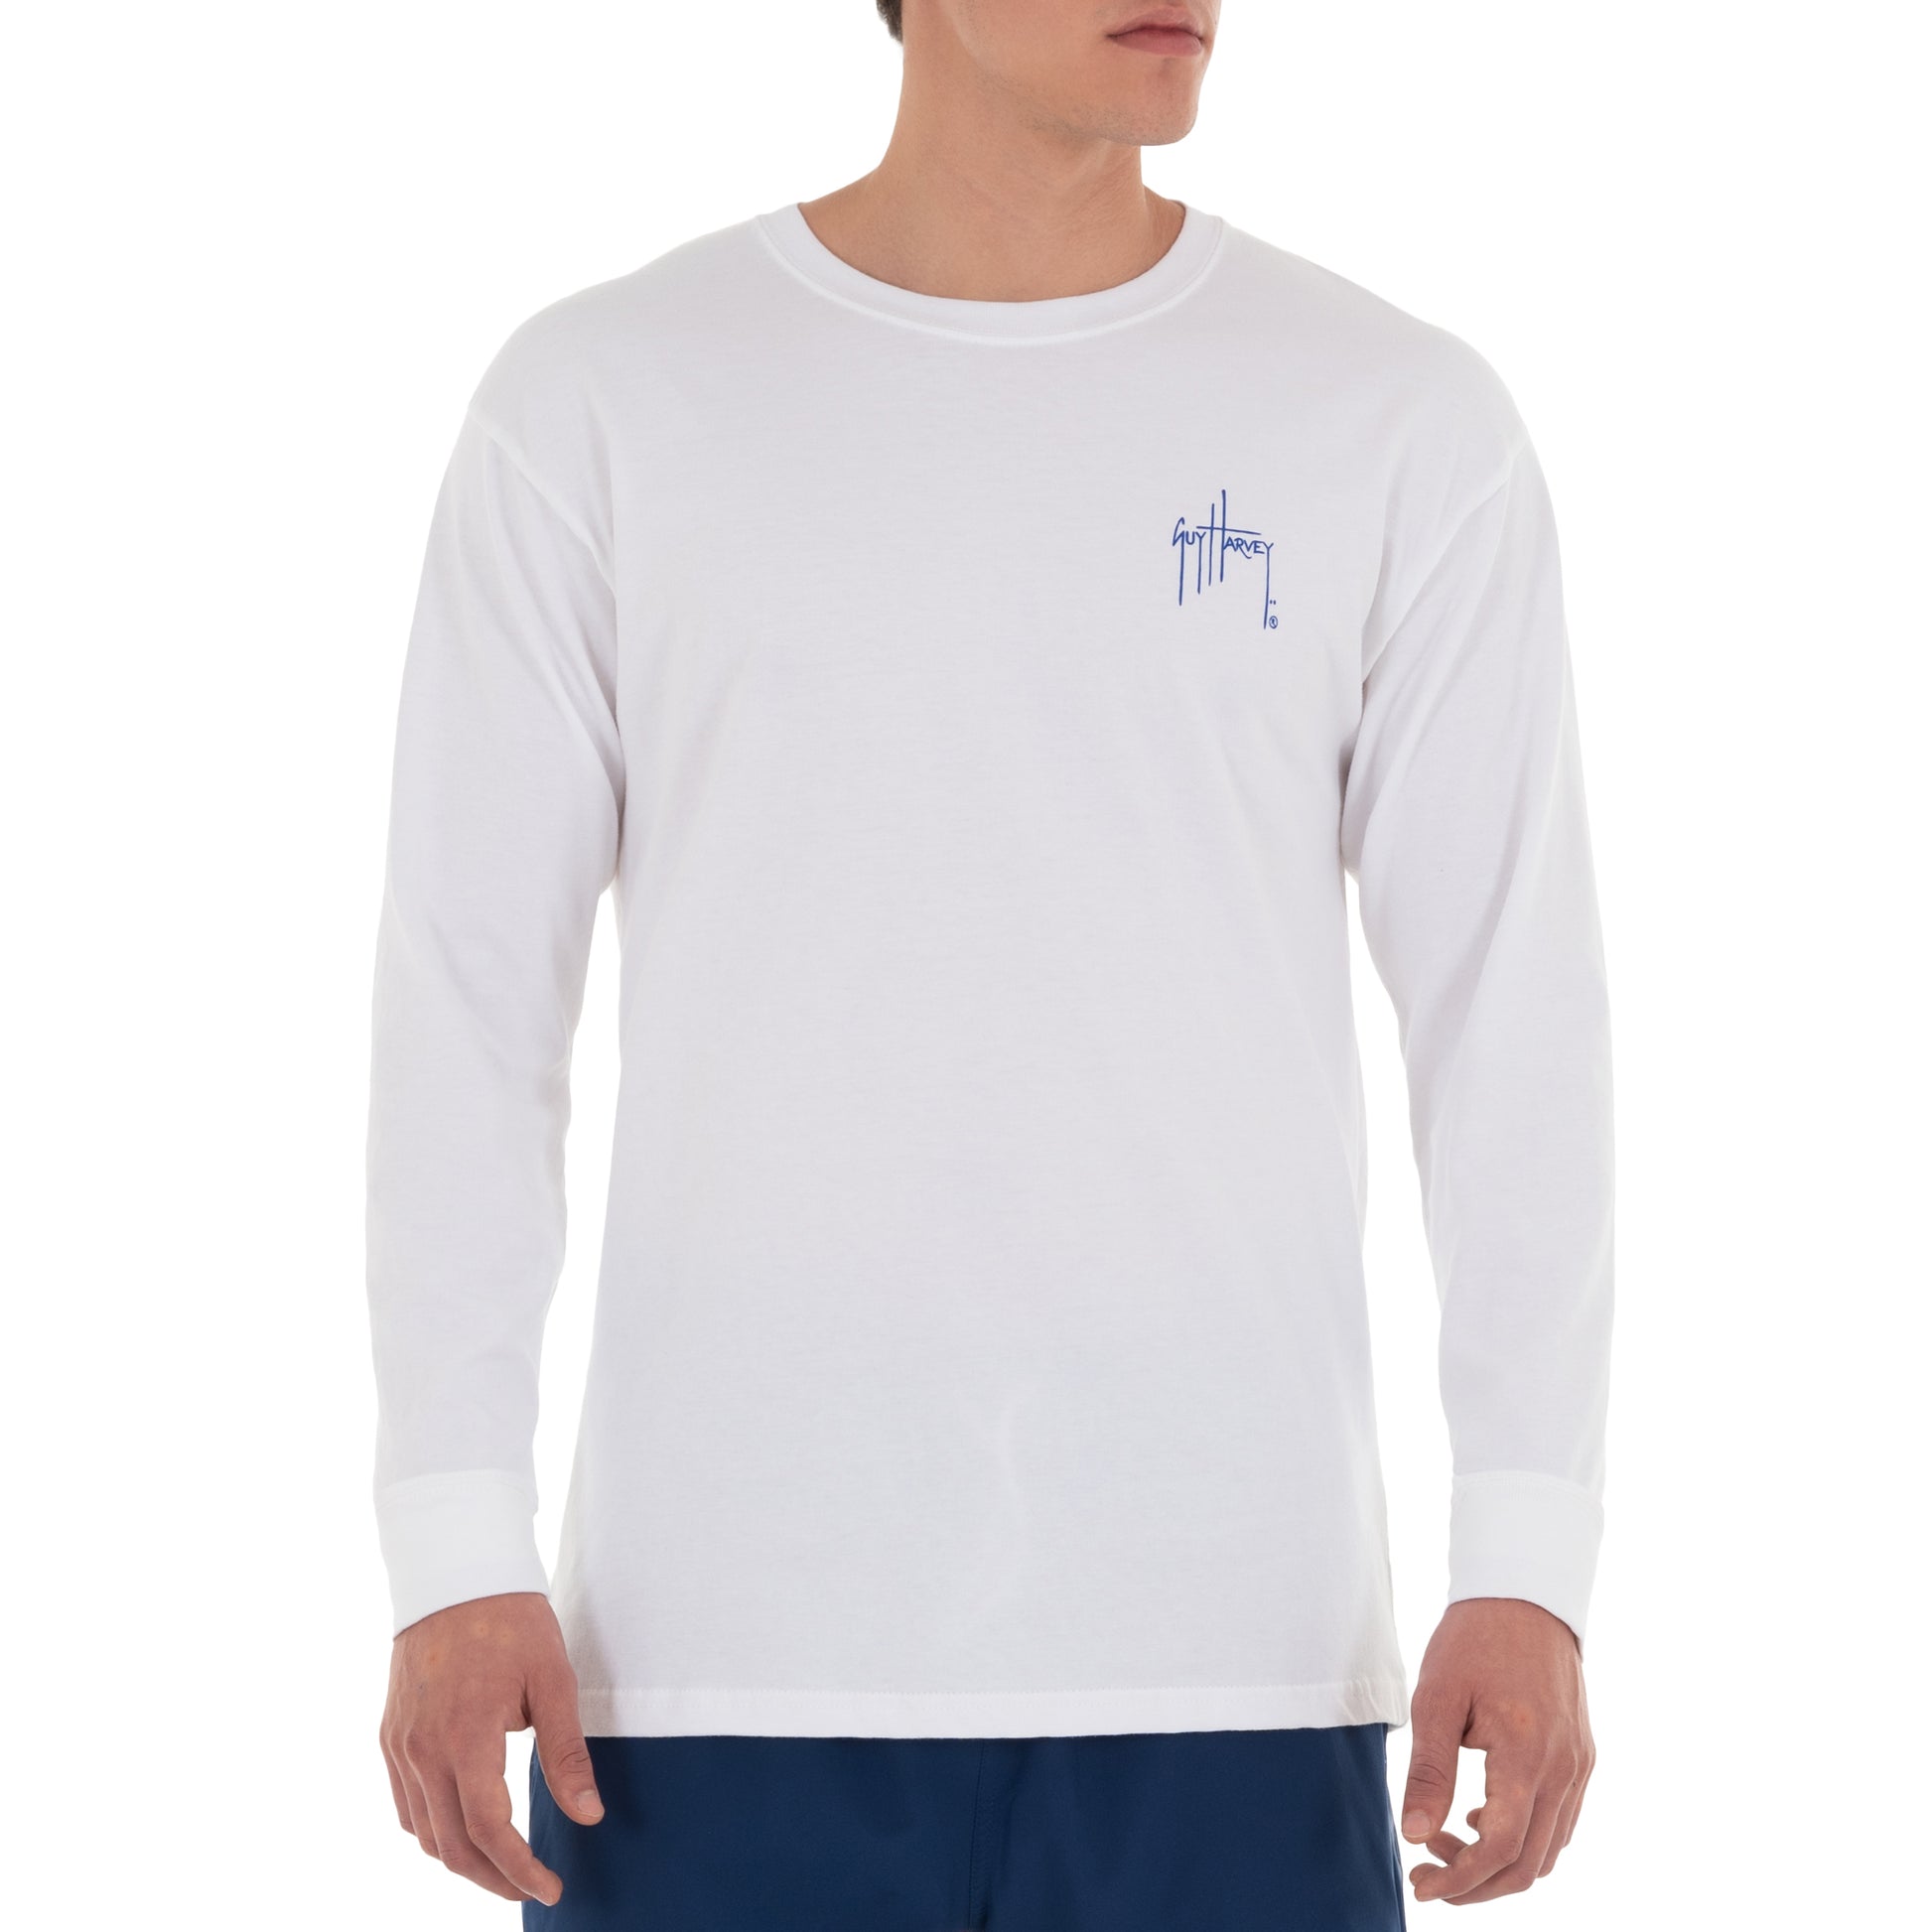 Guy Harvey RWB Sailfish Long-Sleeve T-Shirt for Men - Bright White - L